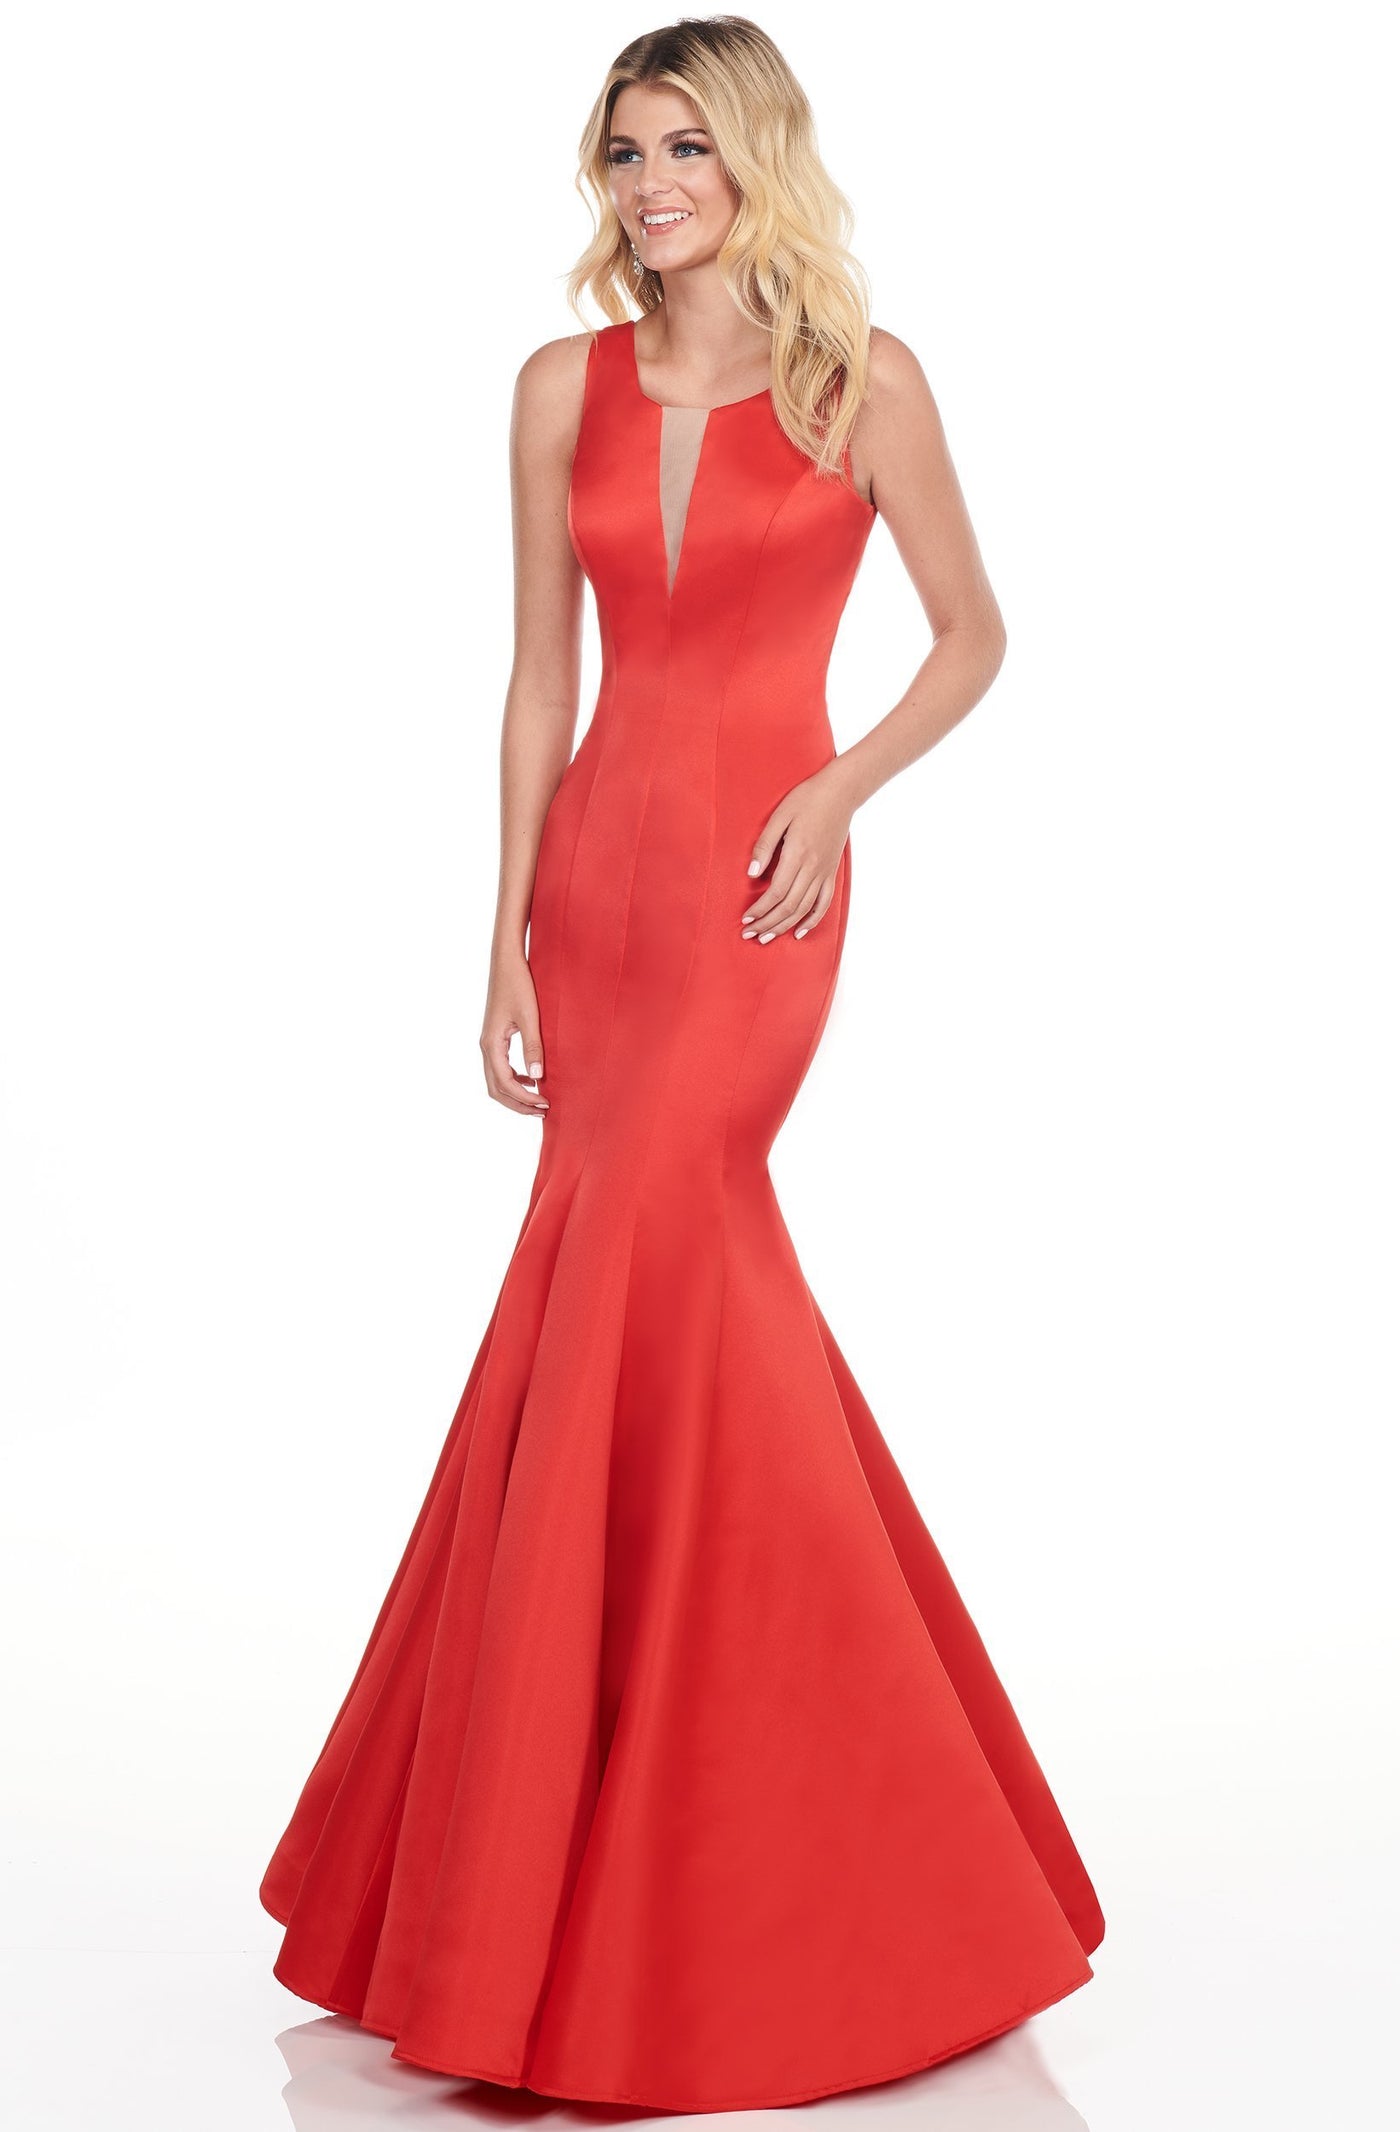 Rachel Allan Shorts - 4156 Seamed Scoop Mermaid Gown In Red